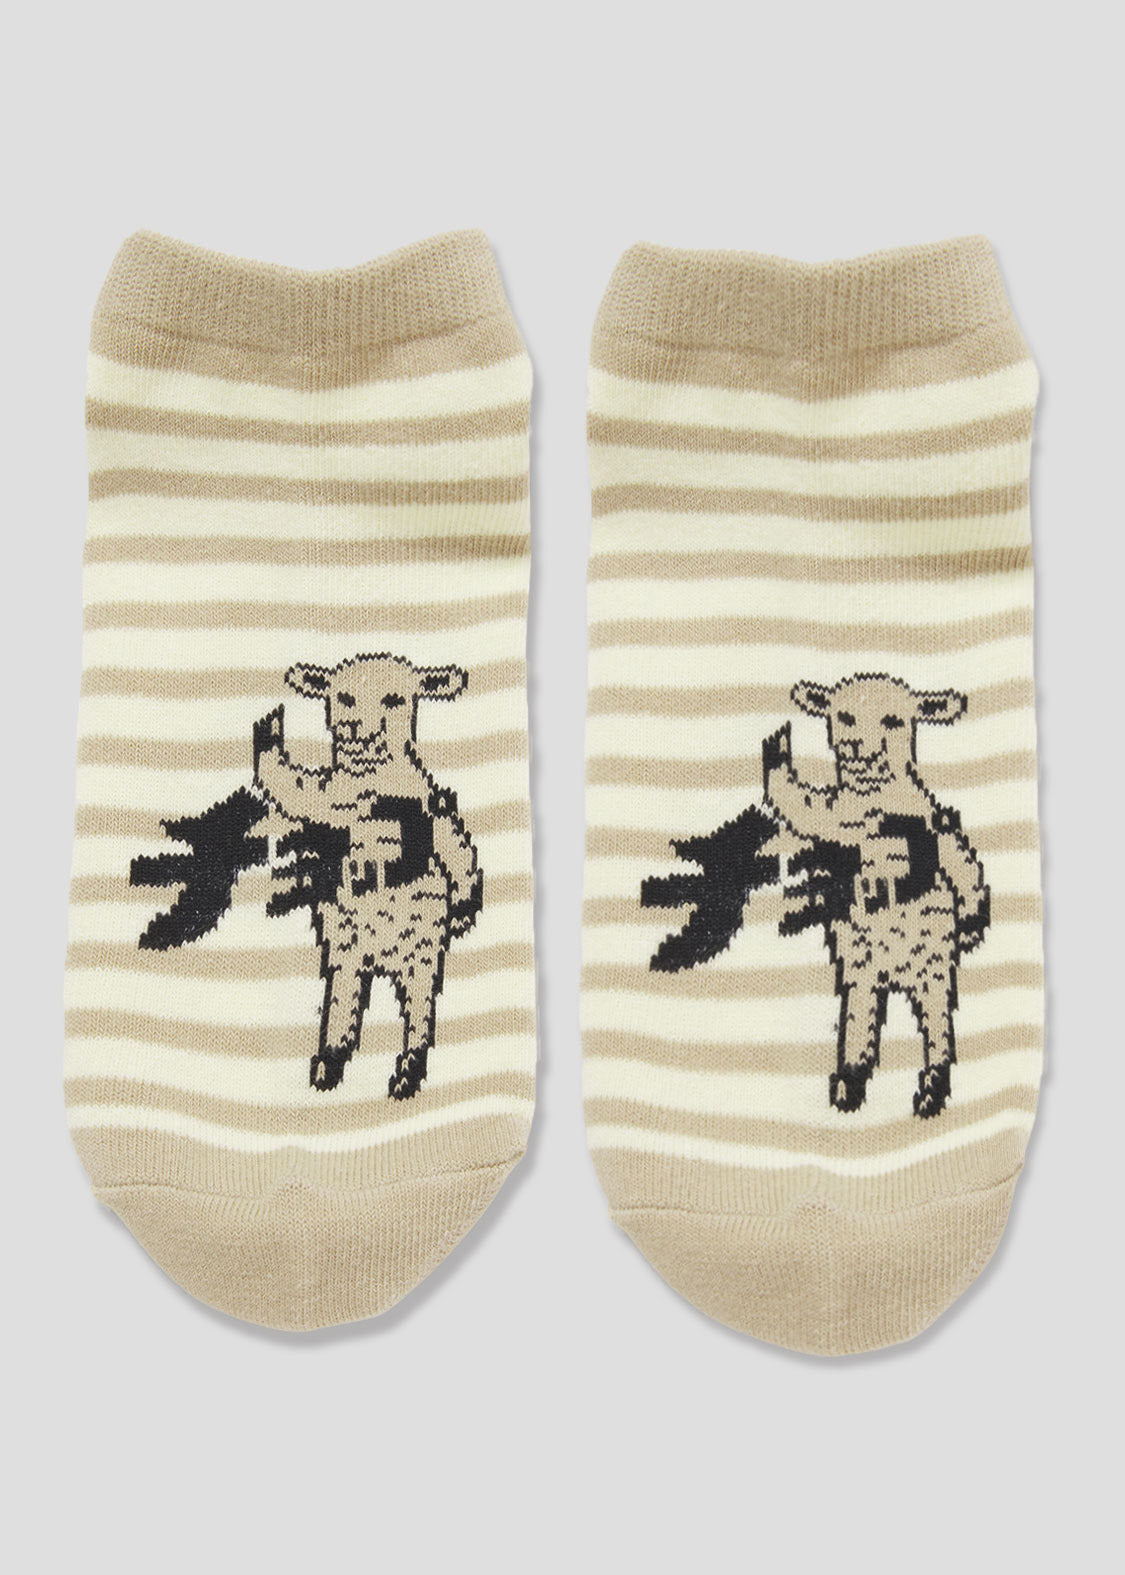 Short Socks (Lamb Chop)